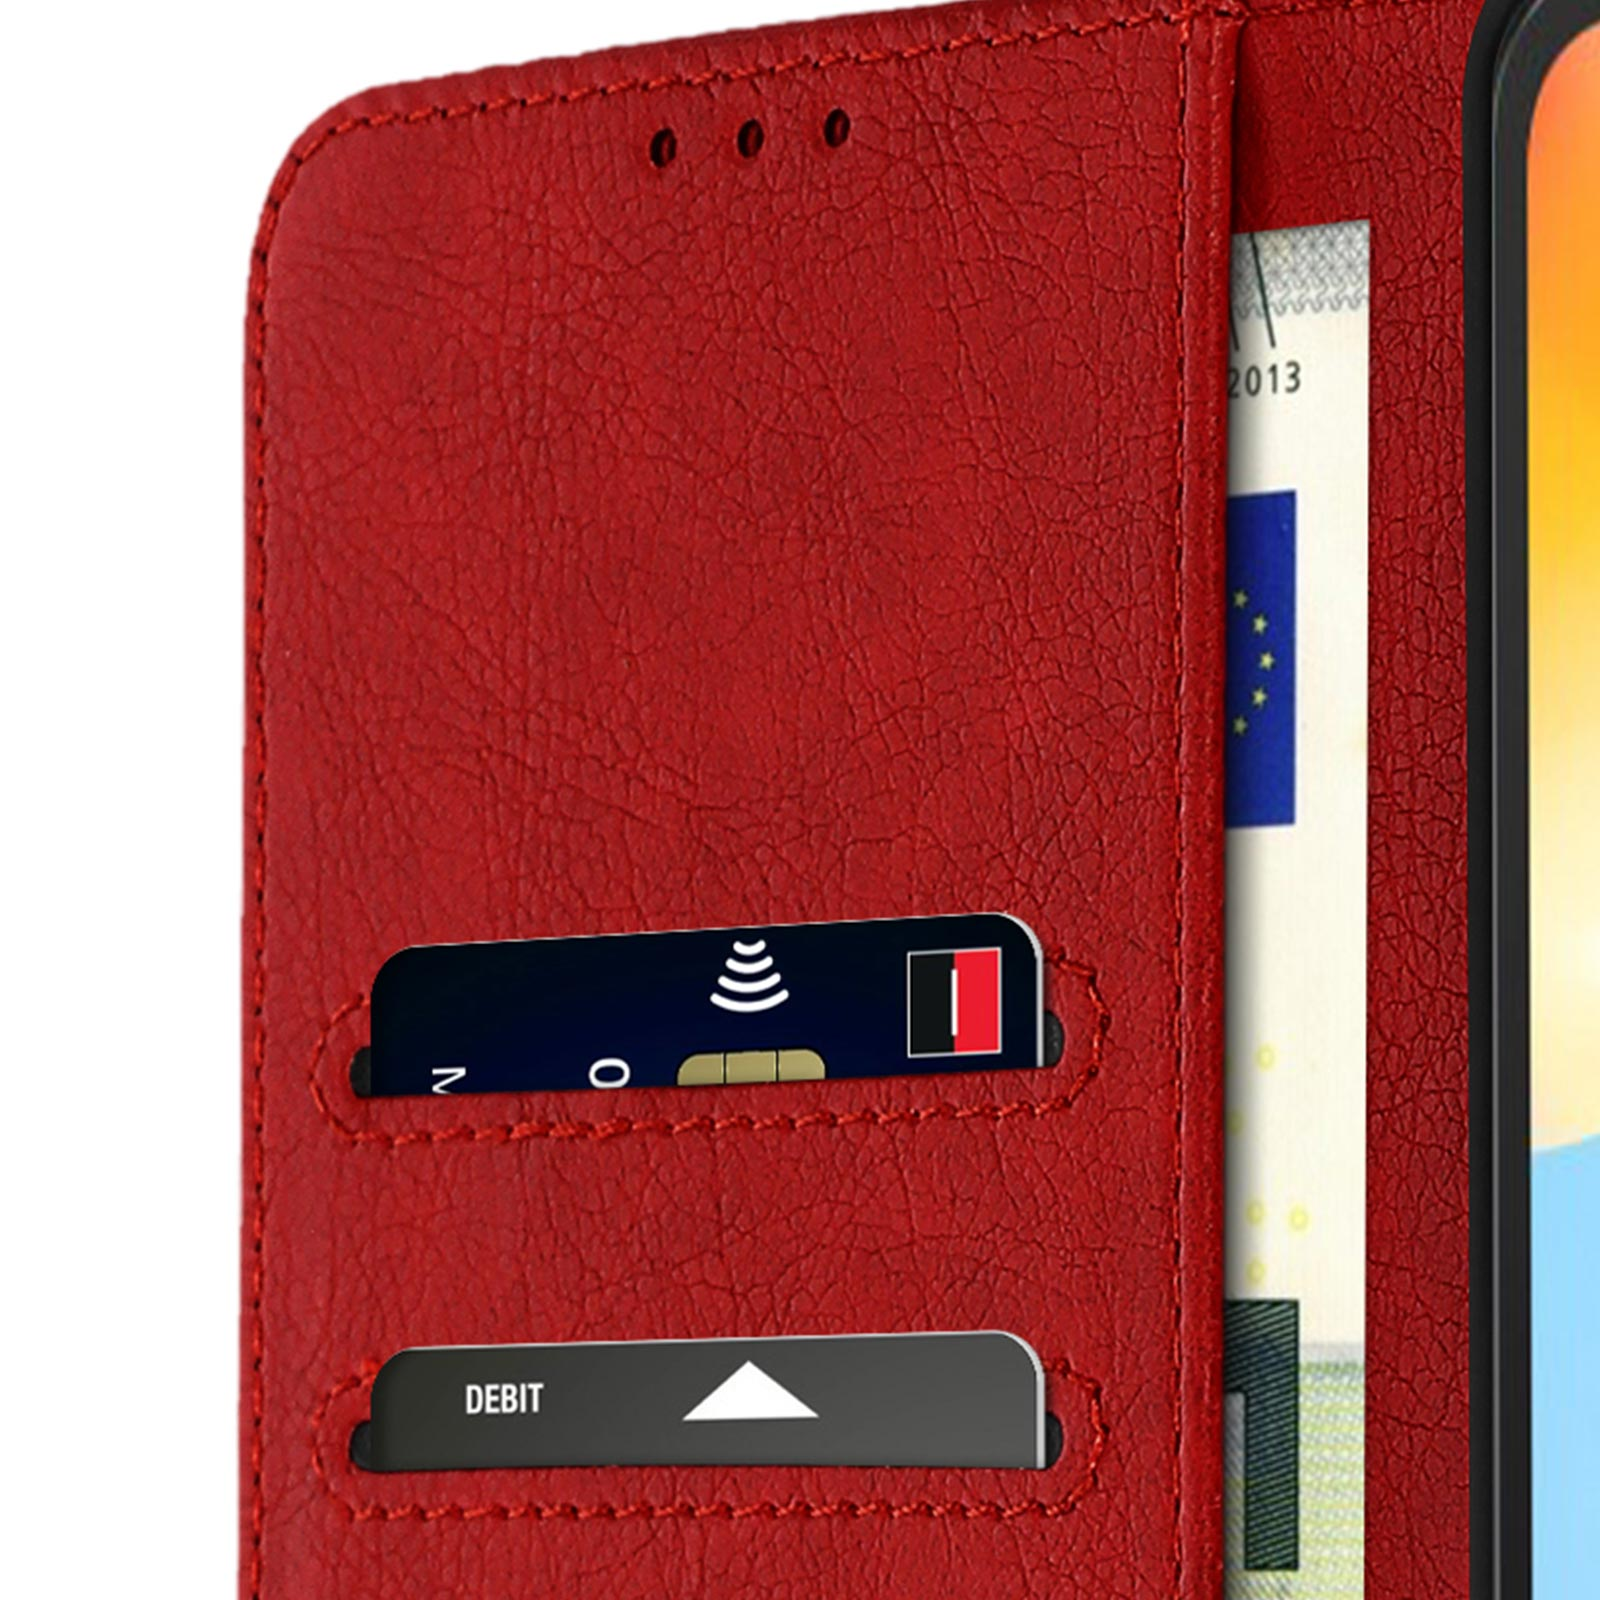 Chester Xiaomi, Bookcover, Rot Series, 10C, AVIZAR Redmi